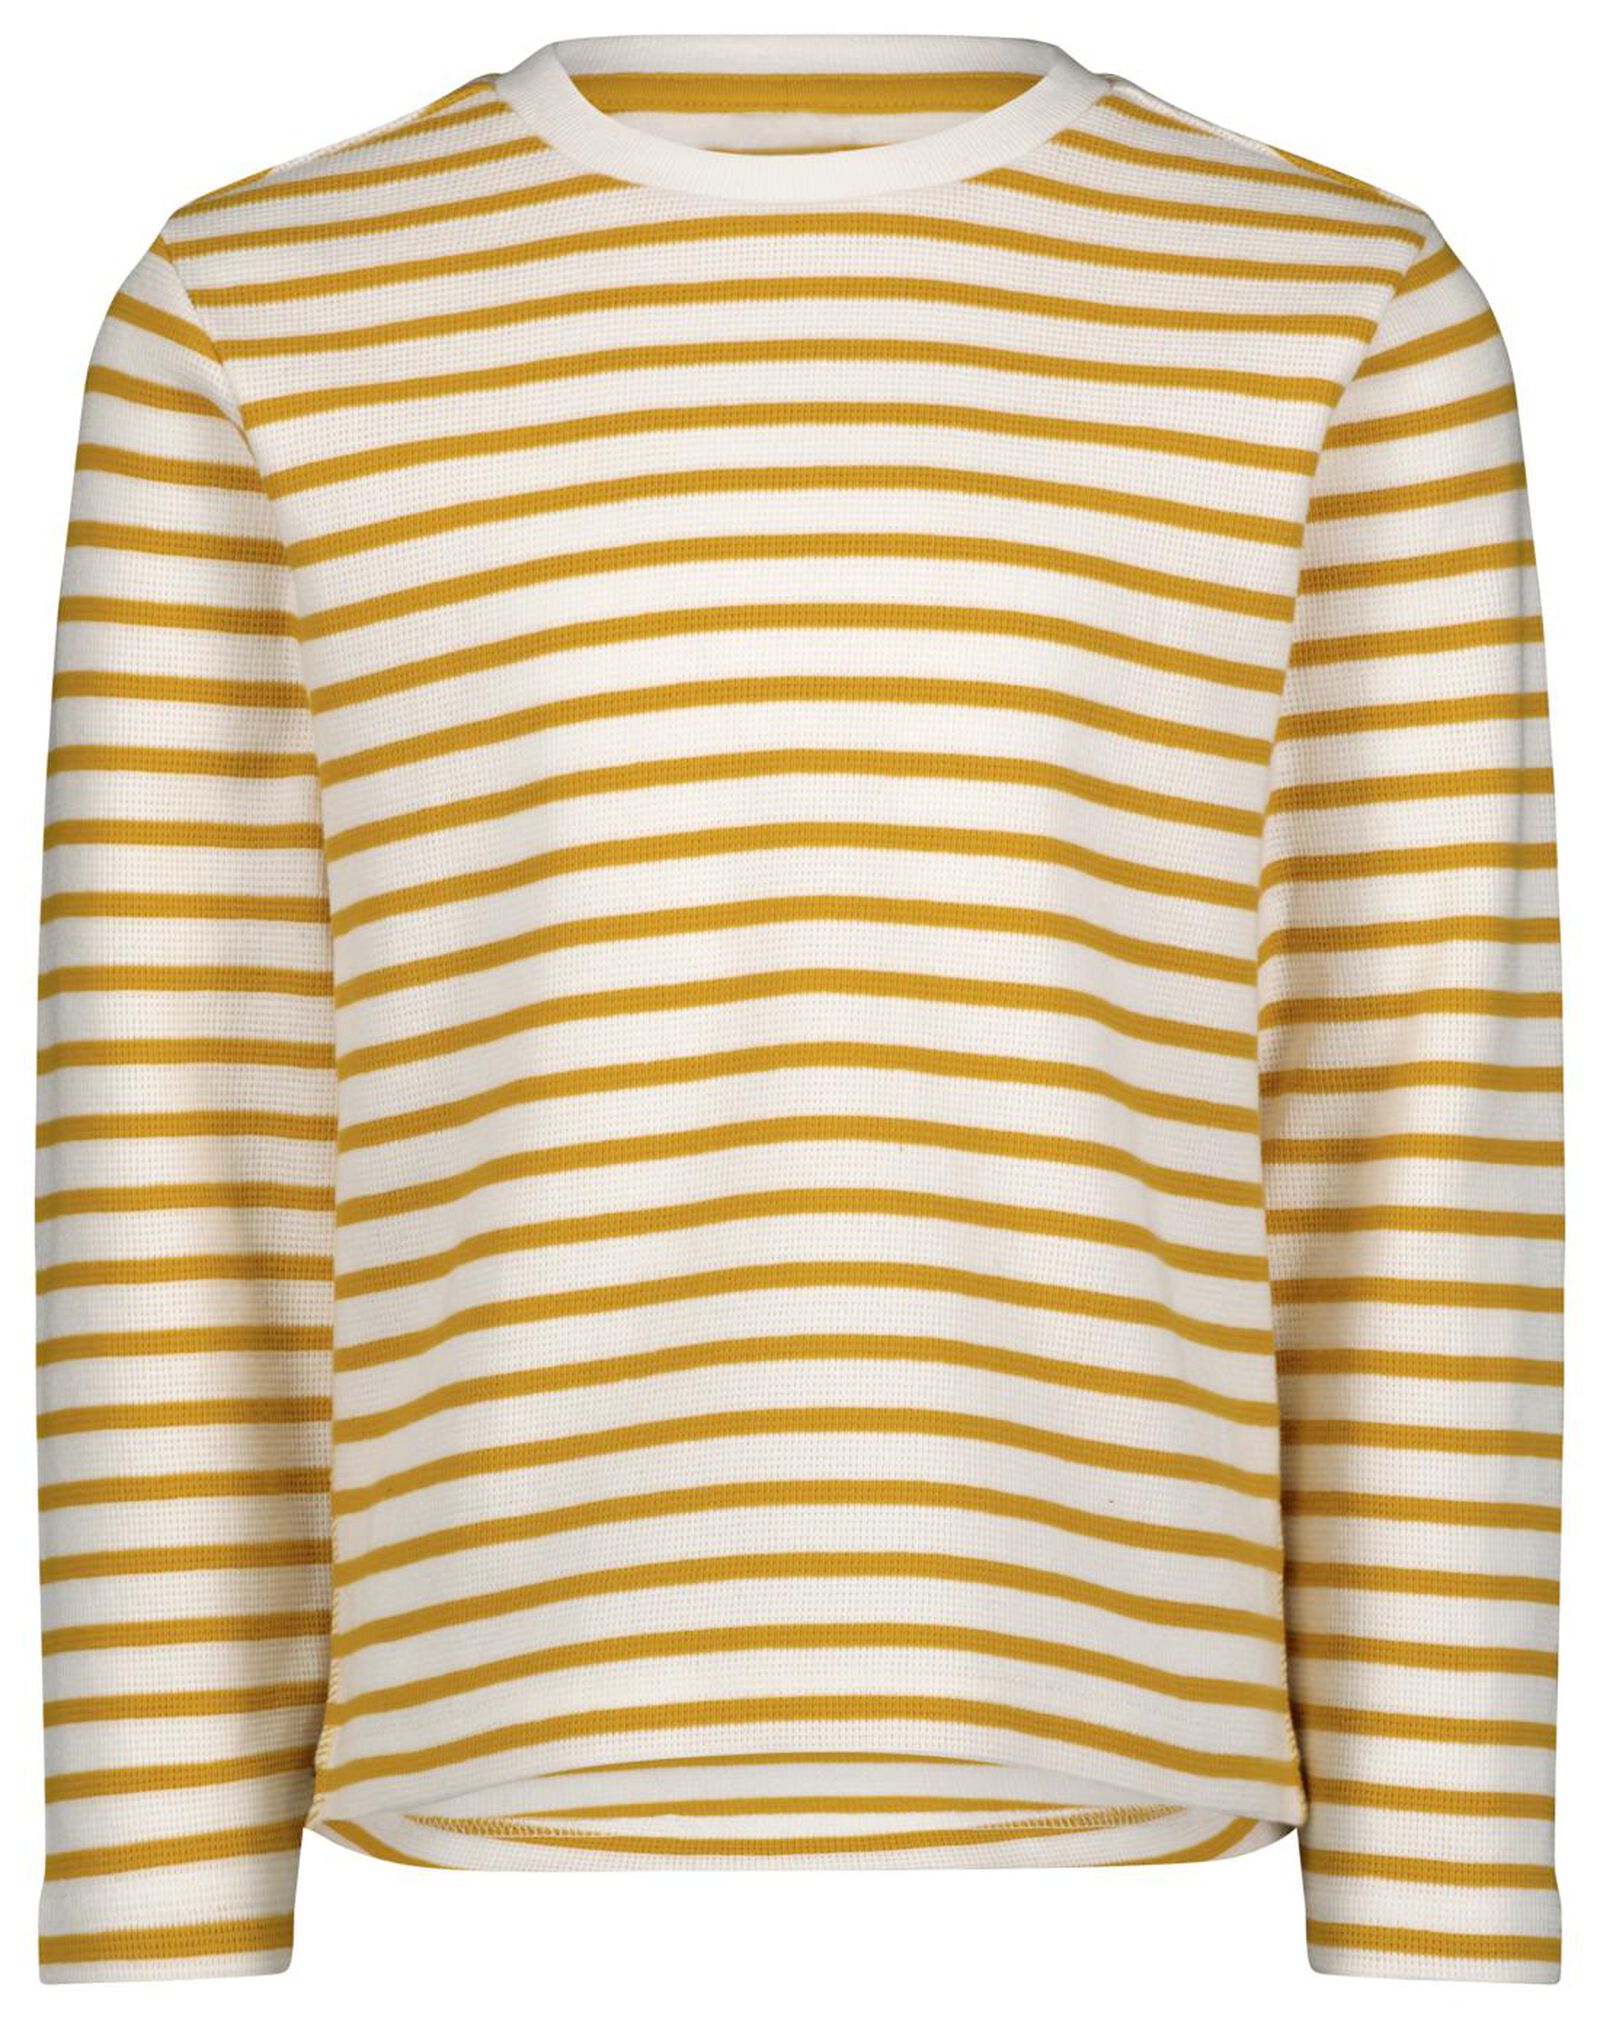 Kinder-Shirt, Streifen gelb 110/116 - 30774734 - HEMA